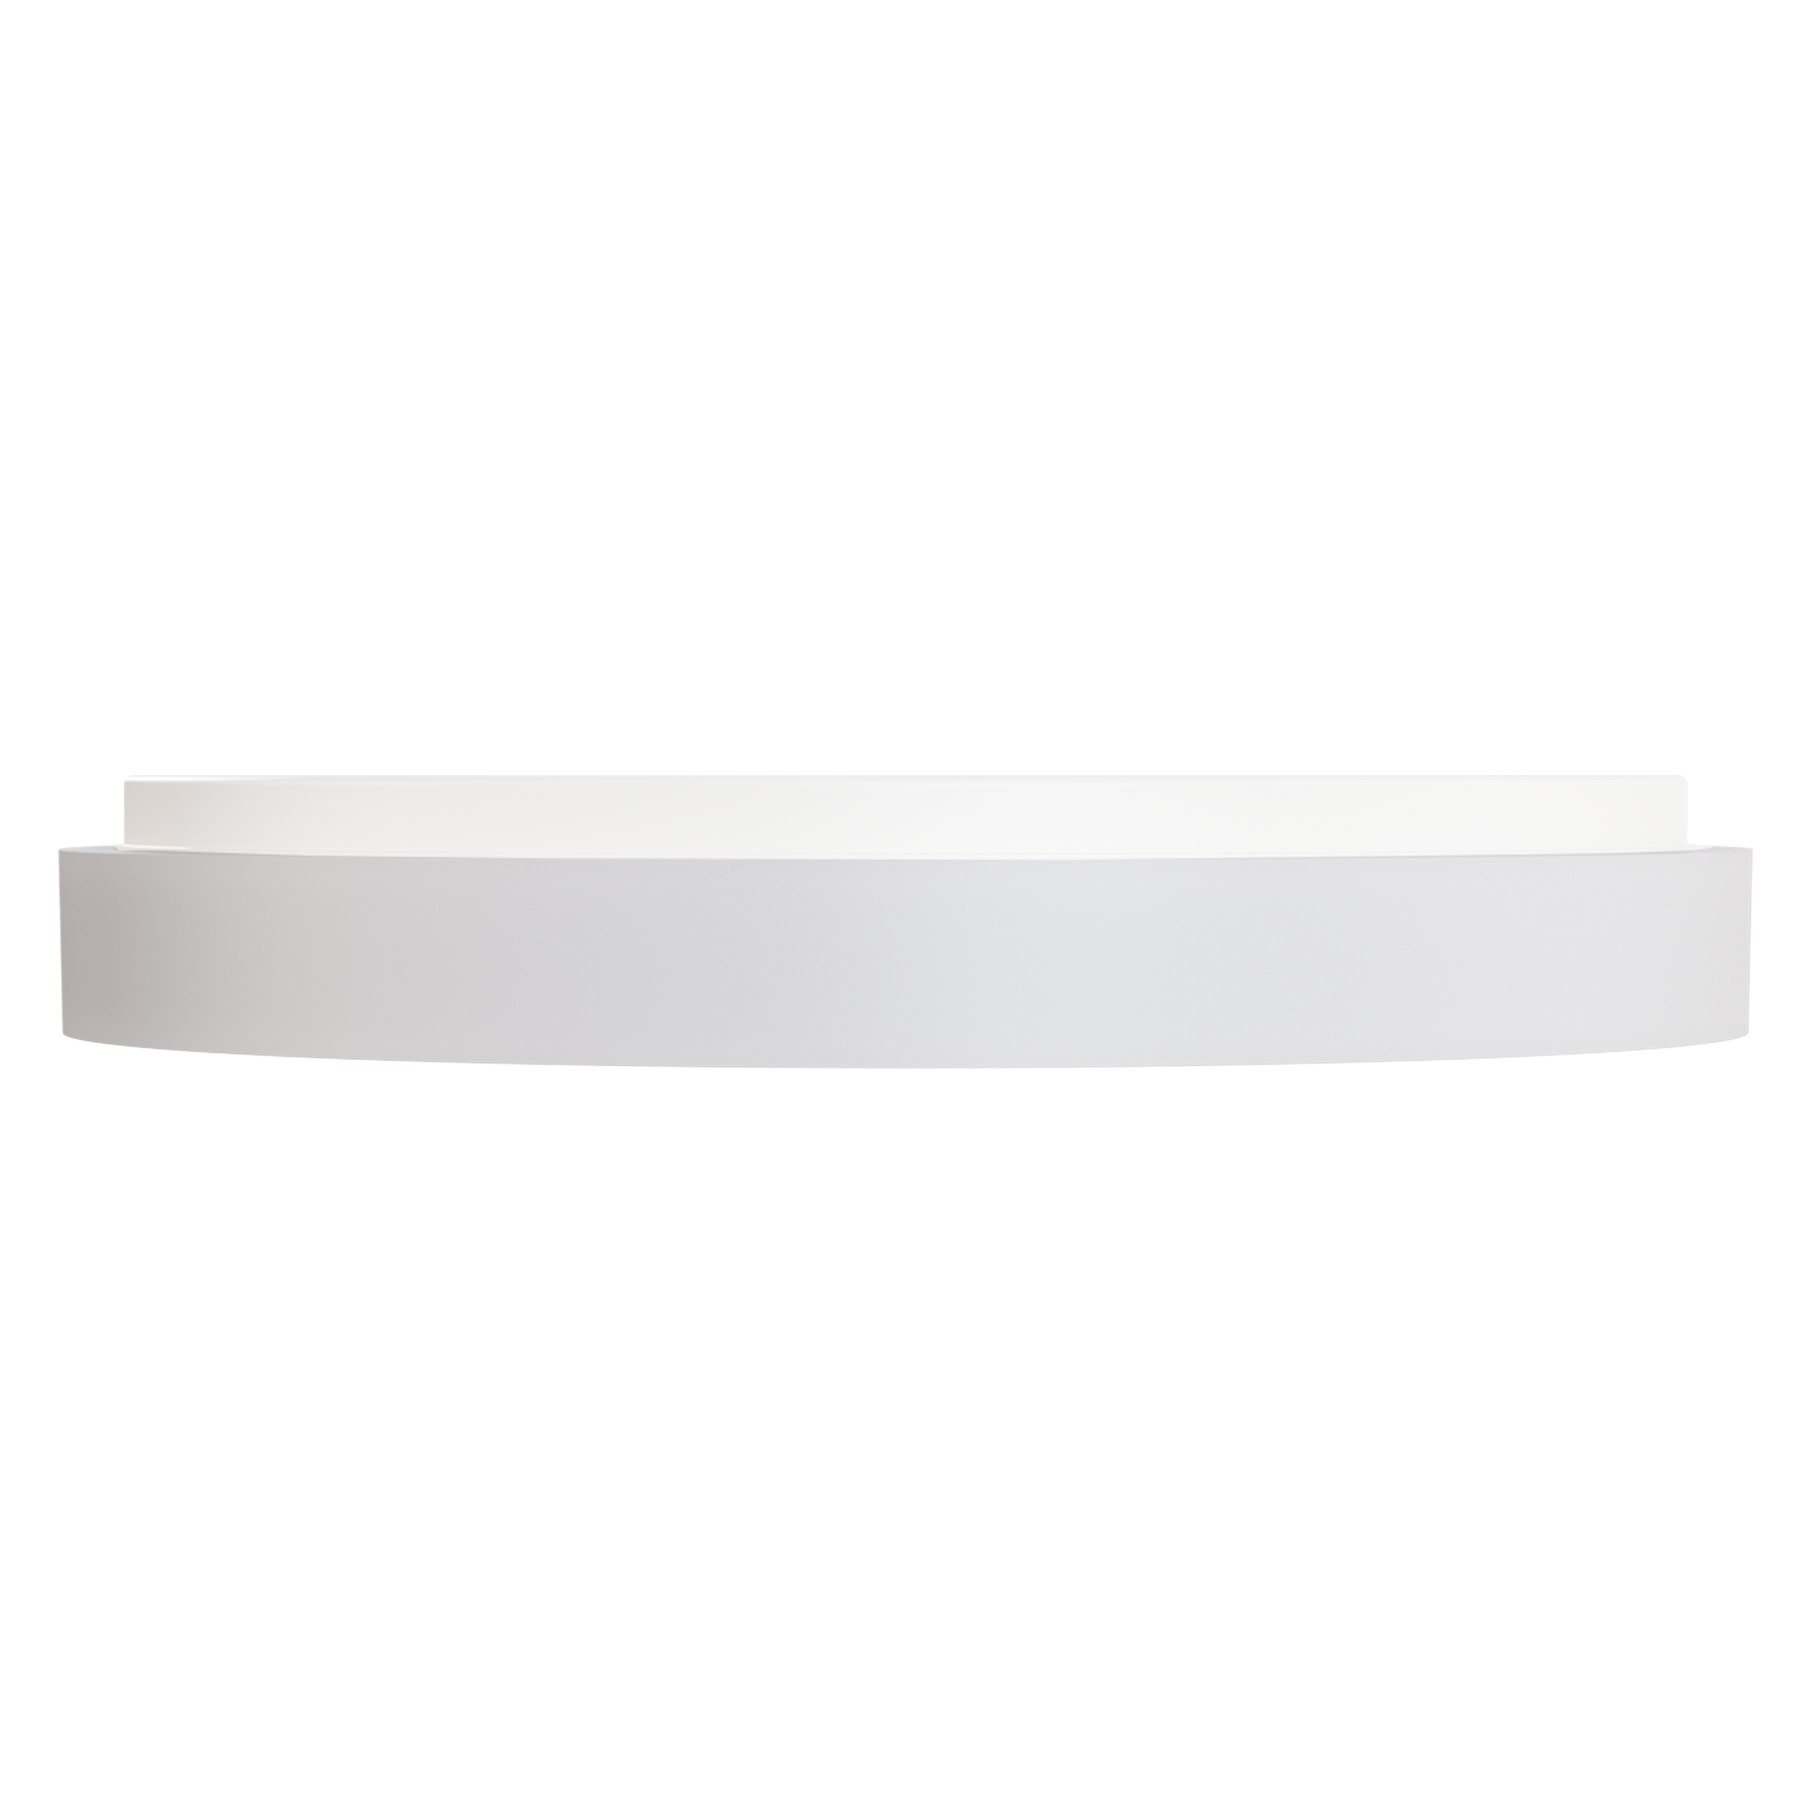 Extra-flache LED-Deckenleuchte mit Opalglas CATRINA, Ø 37–50 cm: Kleines Modell S der flachen Deckenleuchte mit 37,5 cm Durchmesser